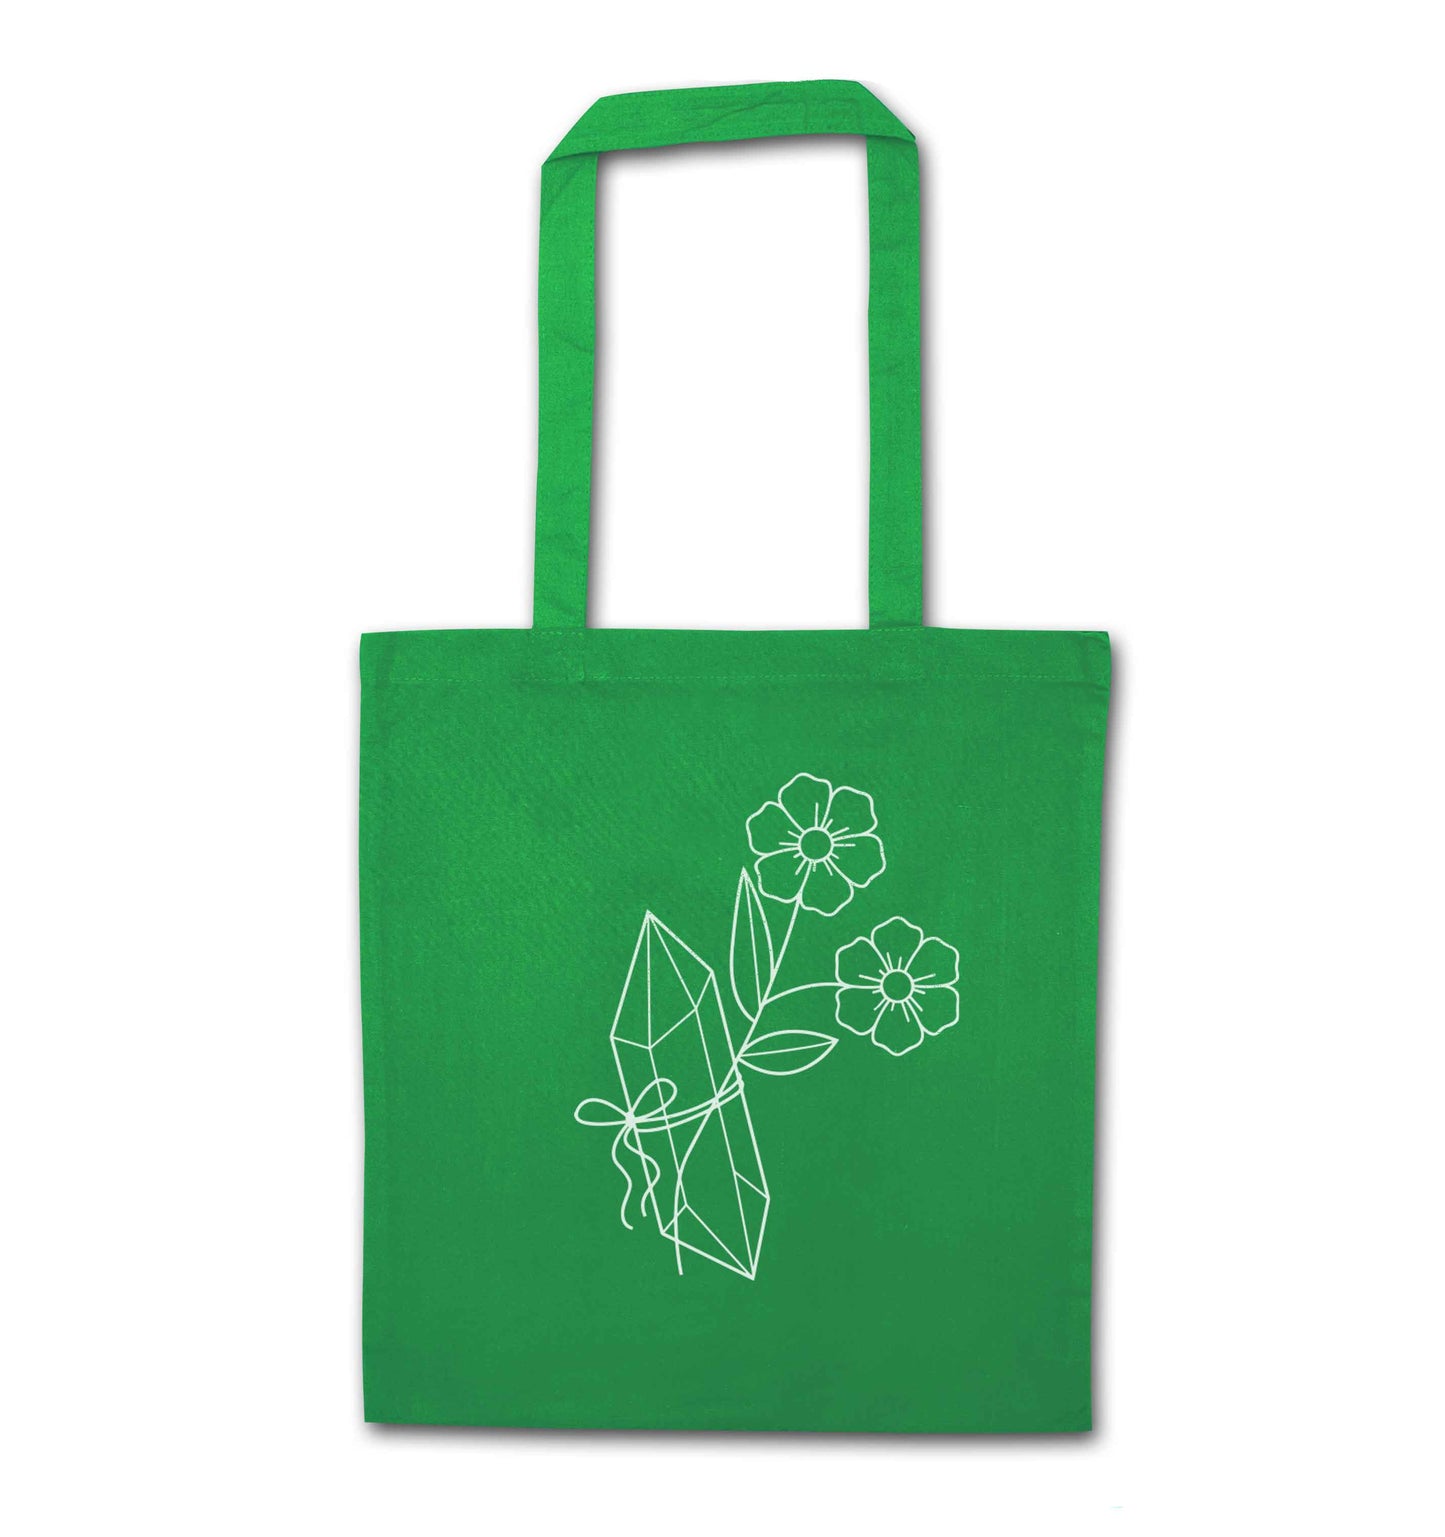 Crystal flower illustration green tote bag